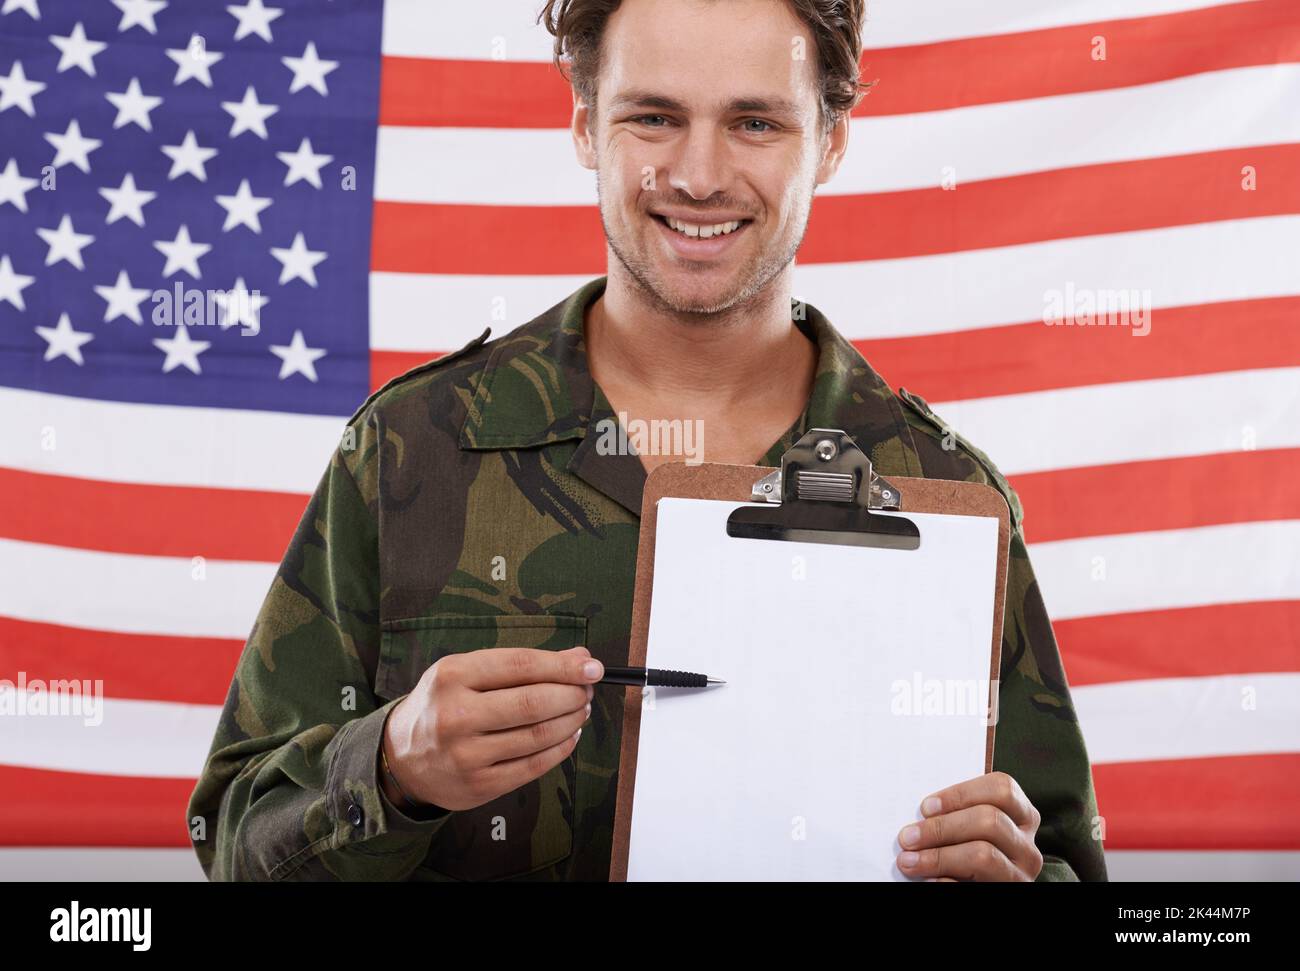 IVE registriert. Ein amerikanischer Soldat hält eine Zwischenablage vor der Flagge seines Landes. Stockfoto